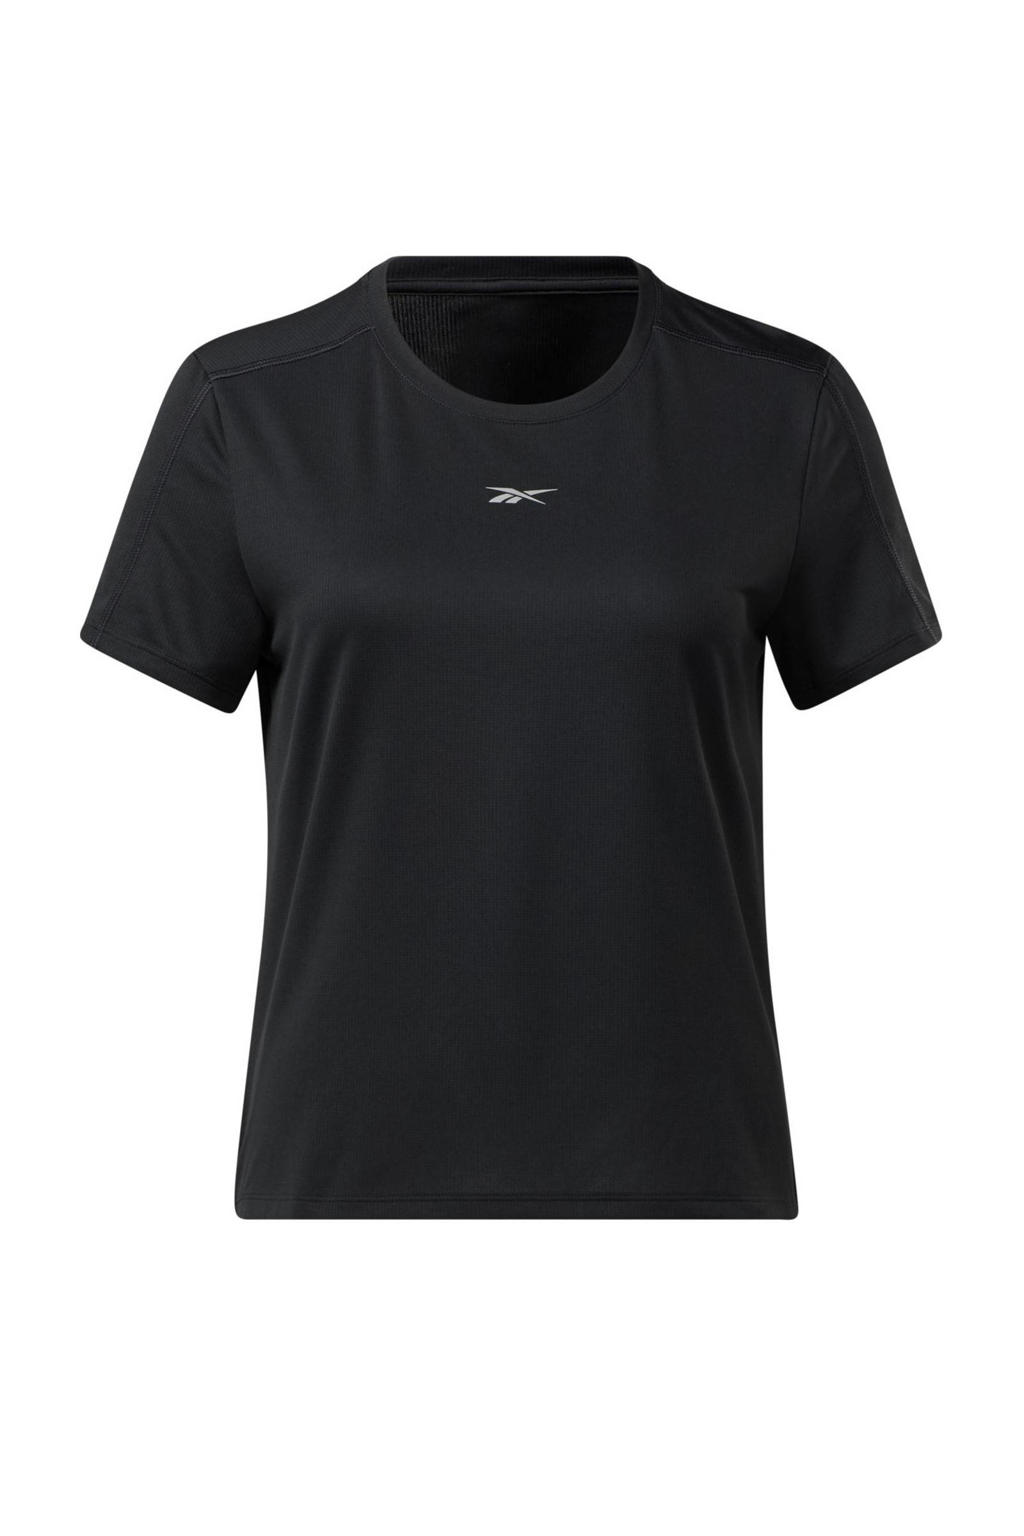 Reebok Training sport T-shirt zwart